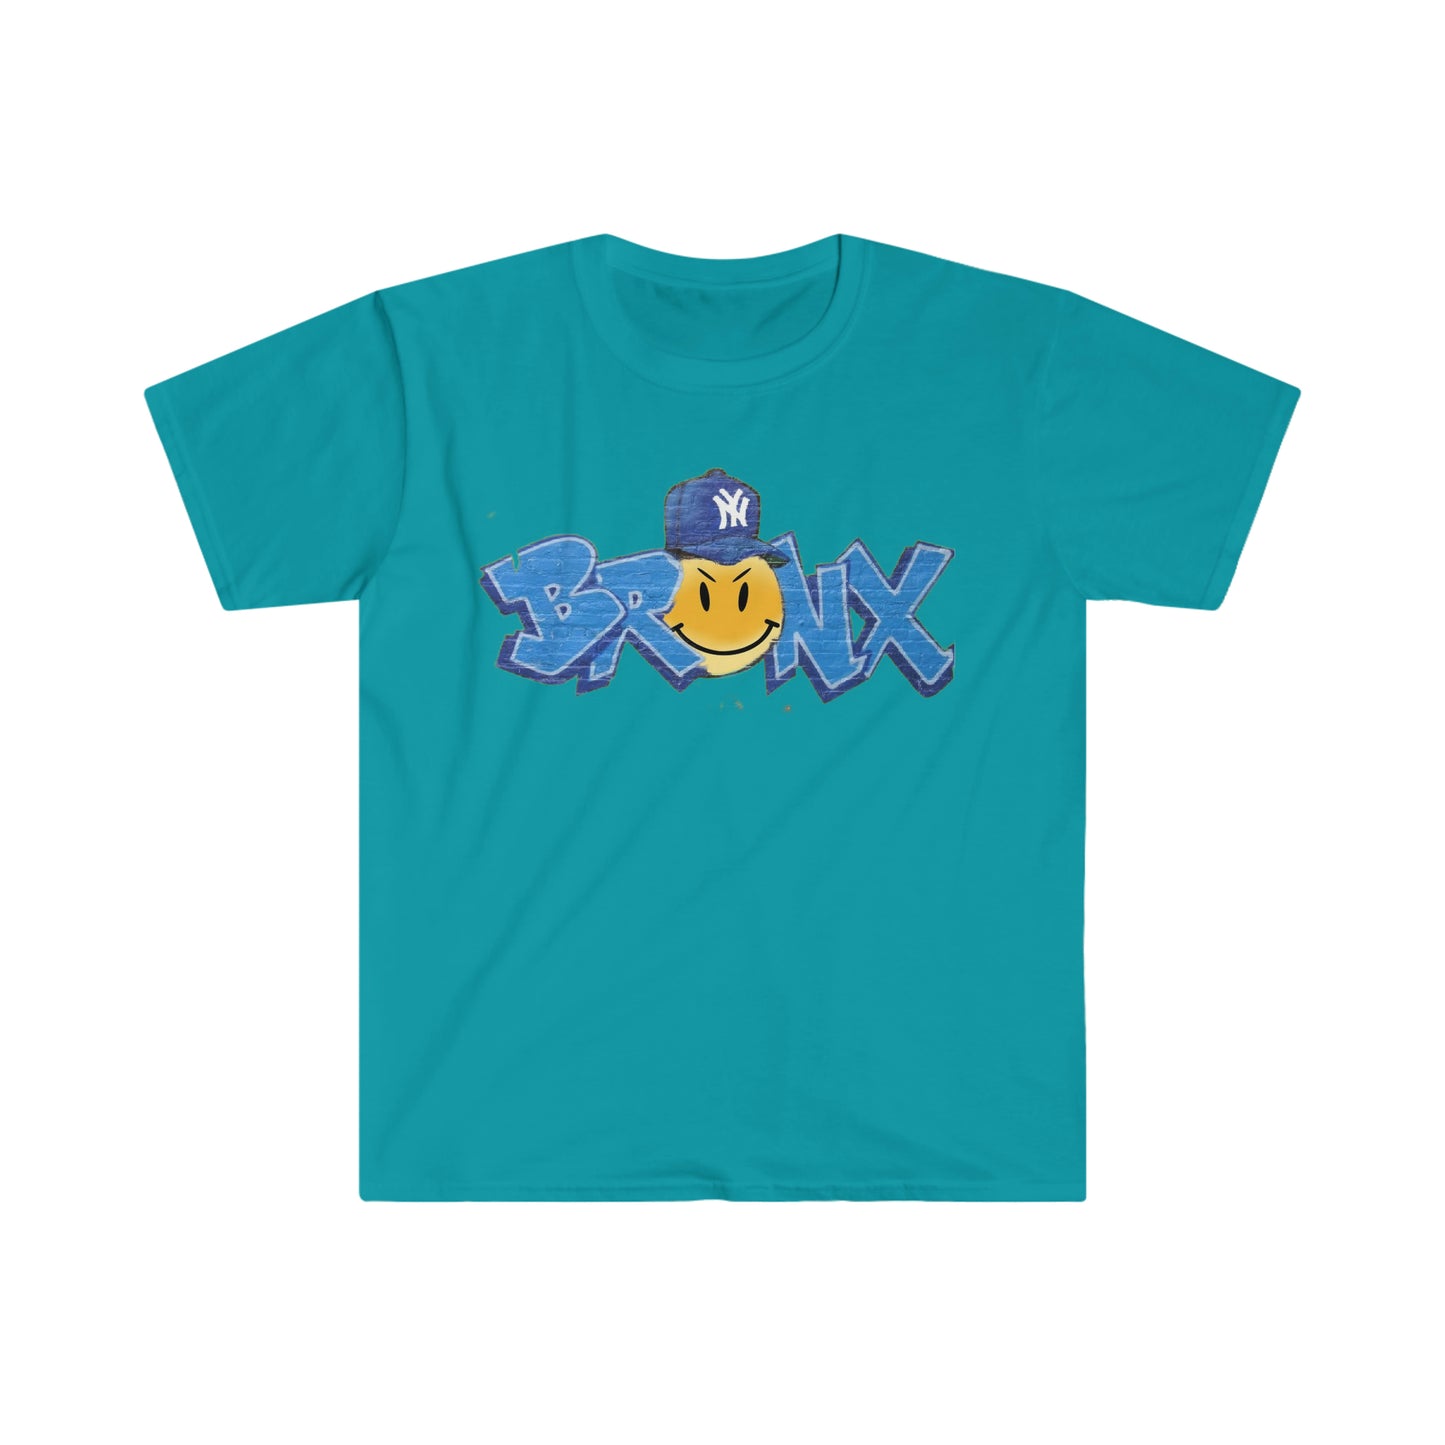 Teal Bronx NY Unisex Softstyle T-Shirt